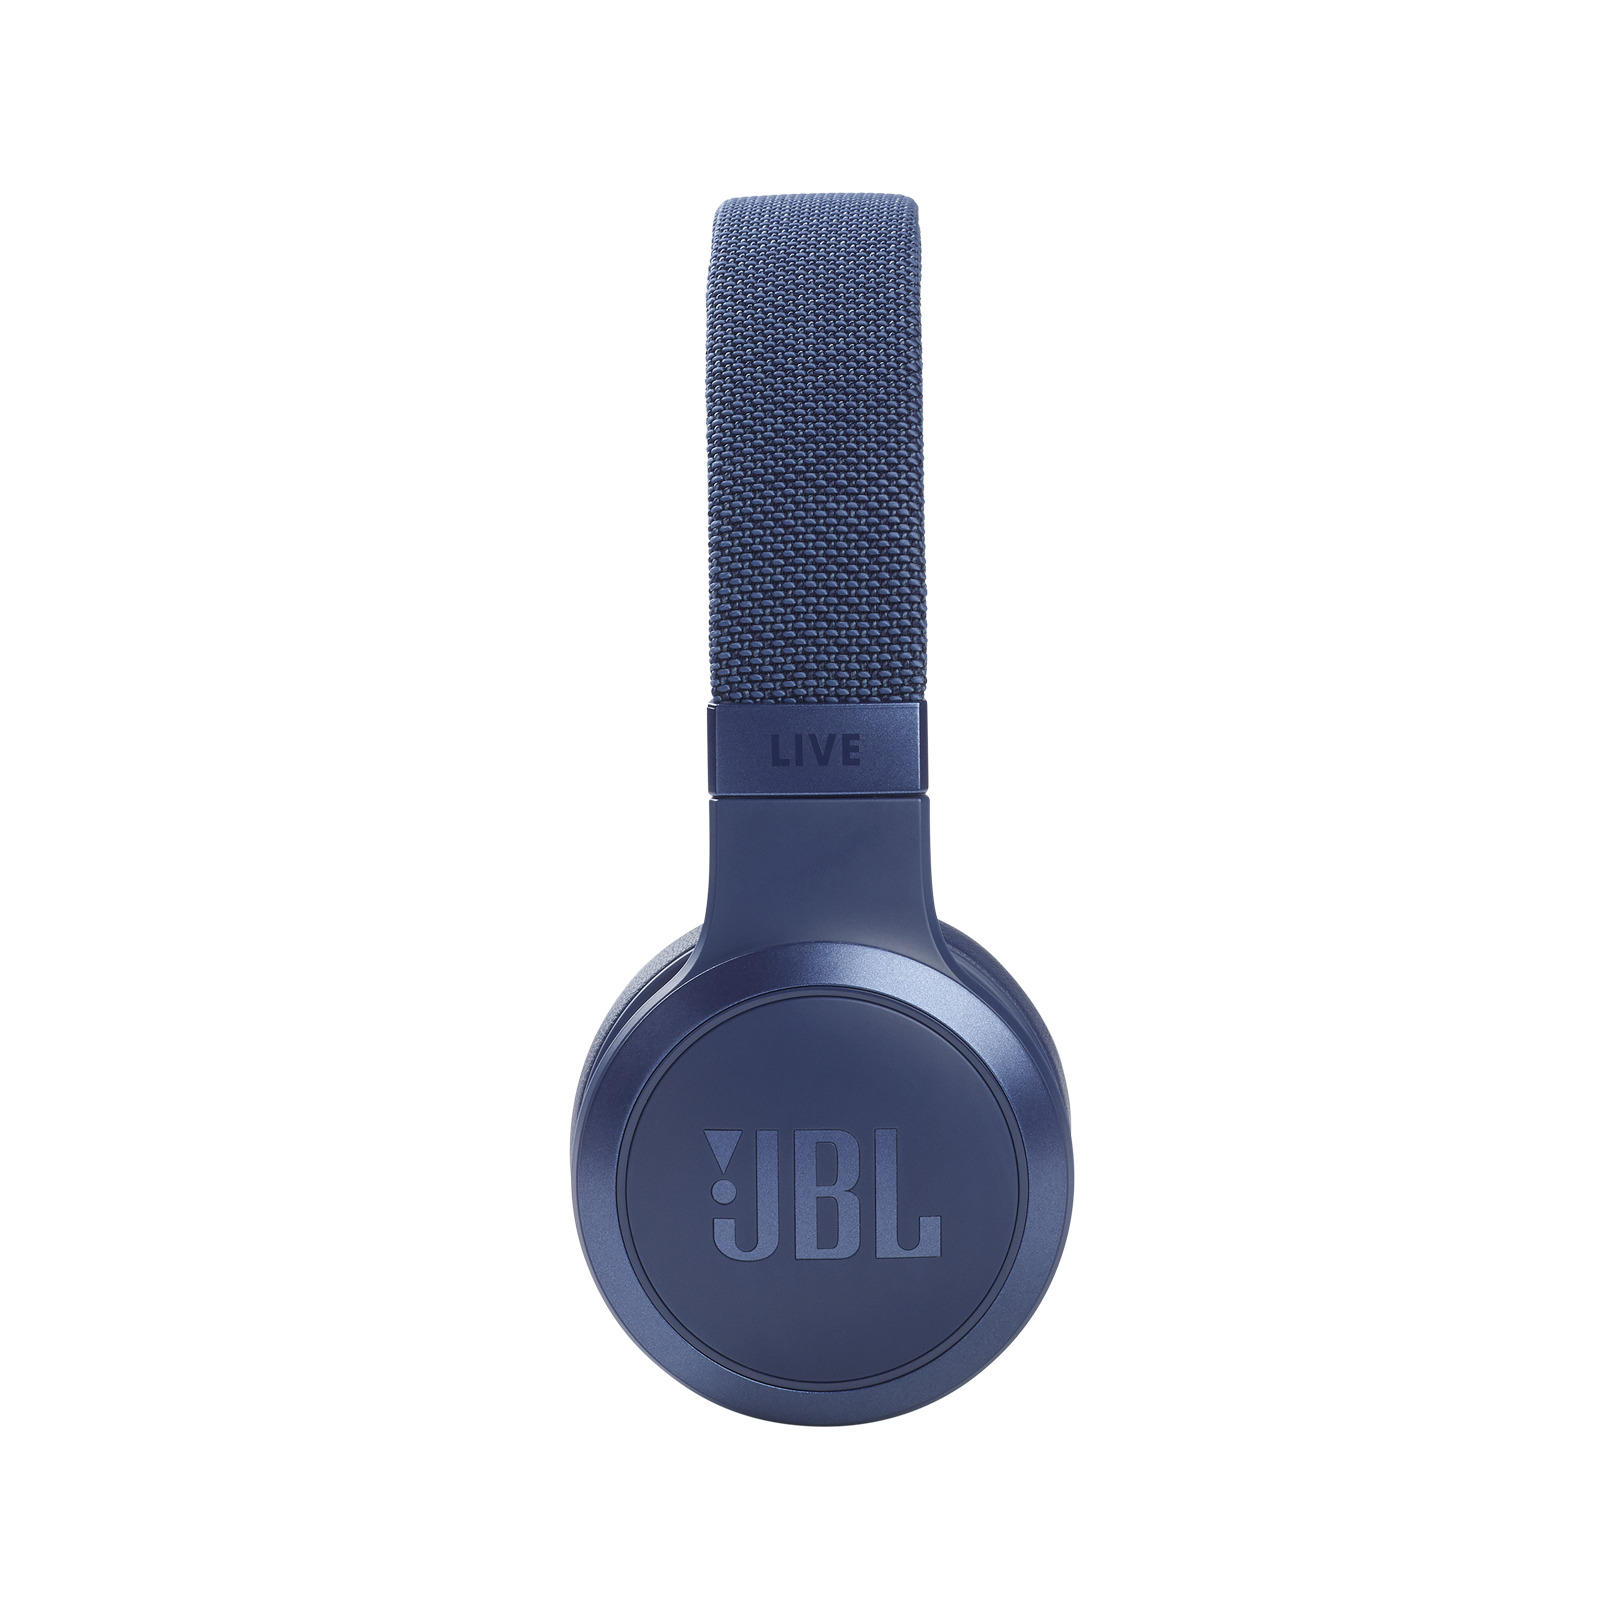 JBL Live 460 NC Blauw